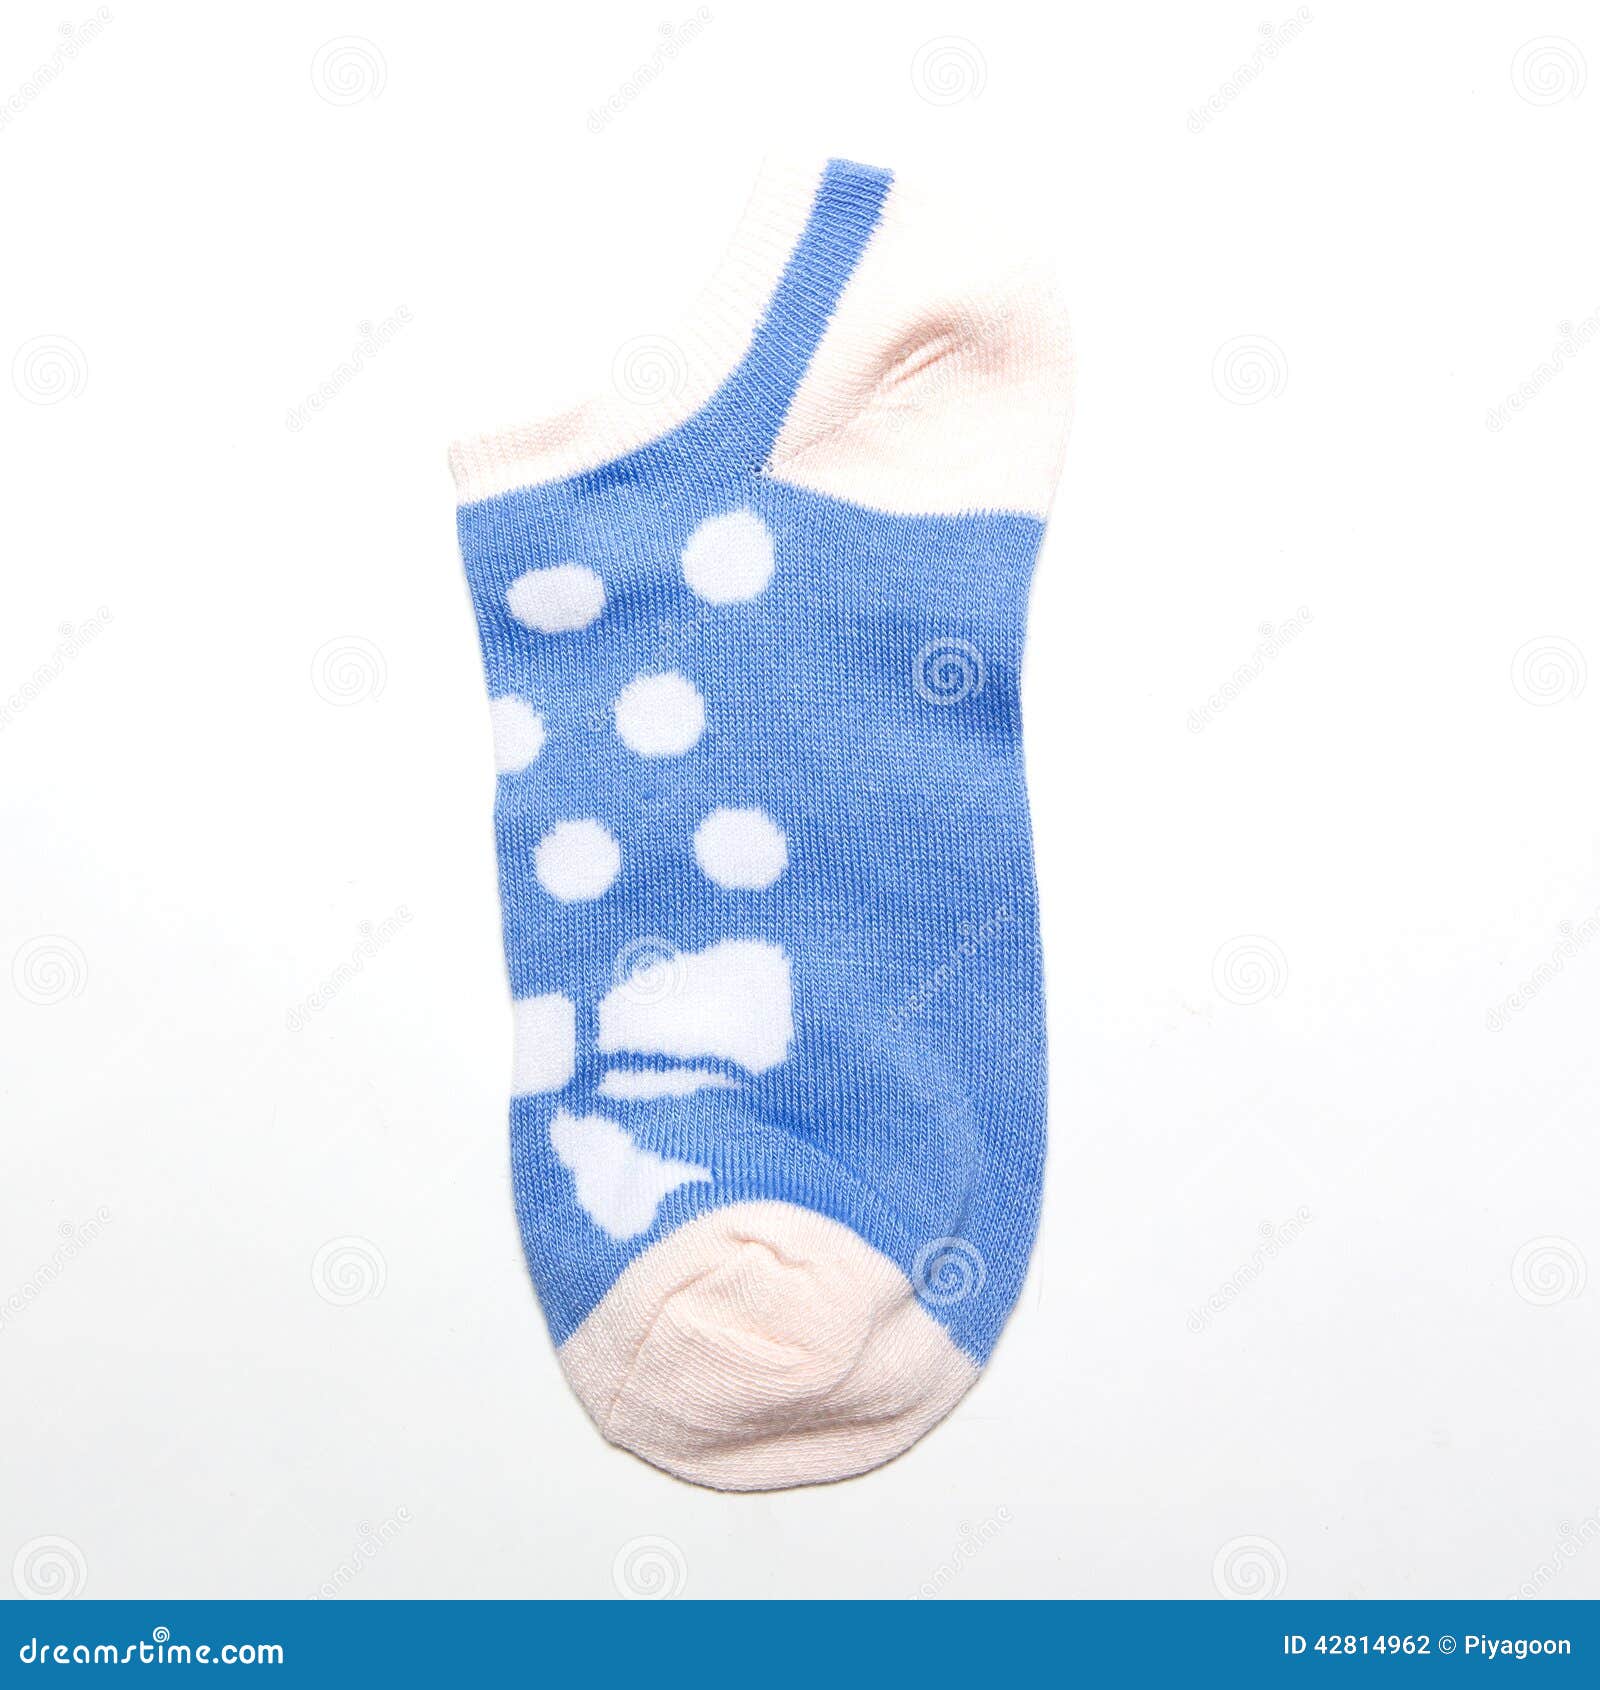 Socks isolated on white stock photo. Image of shoe, isolated - 42814962